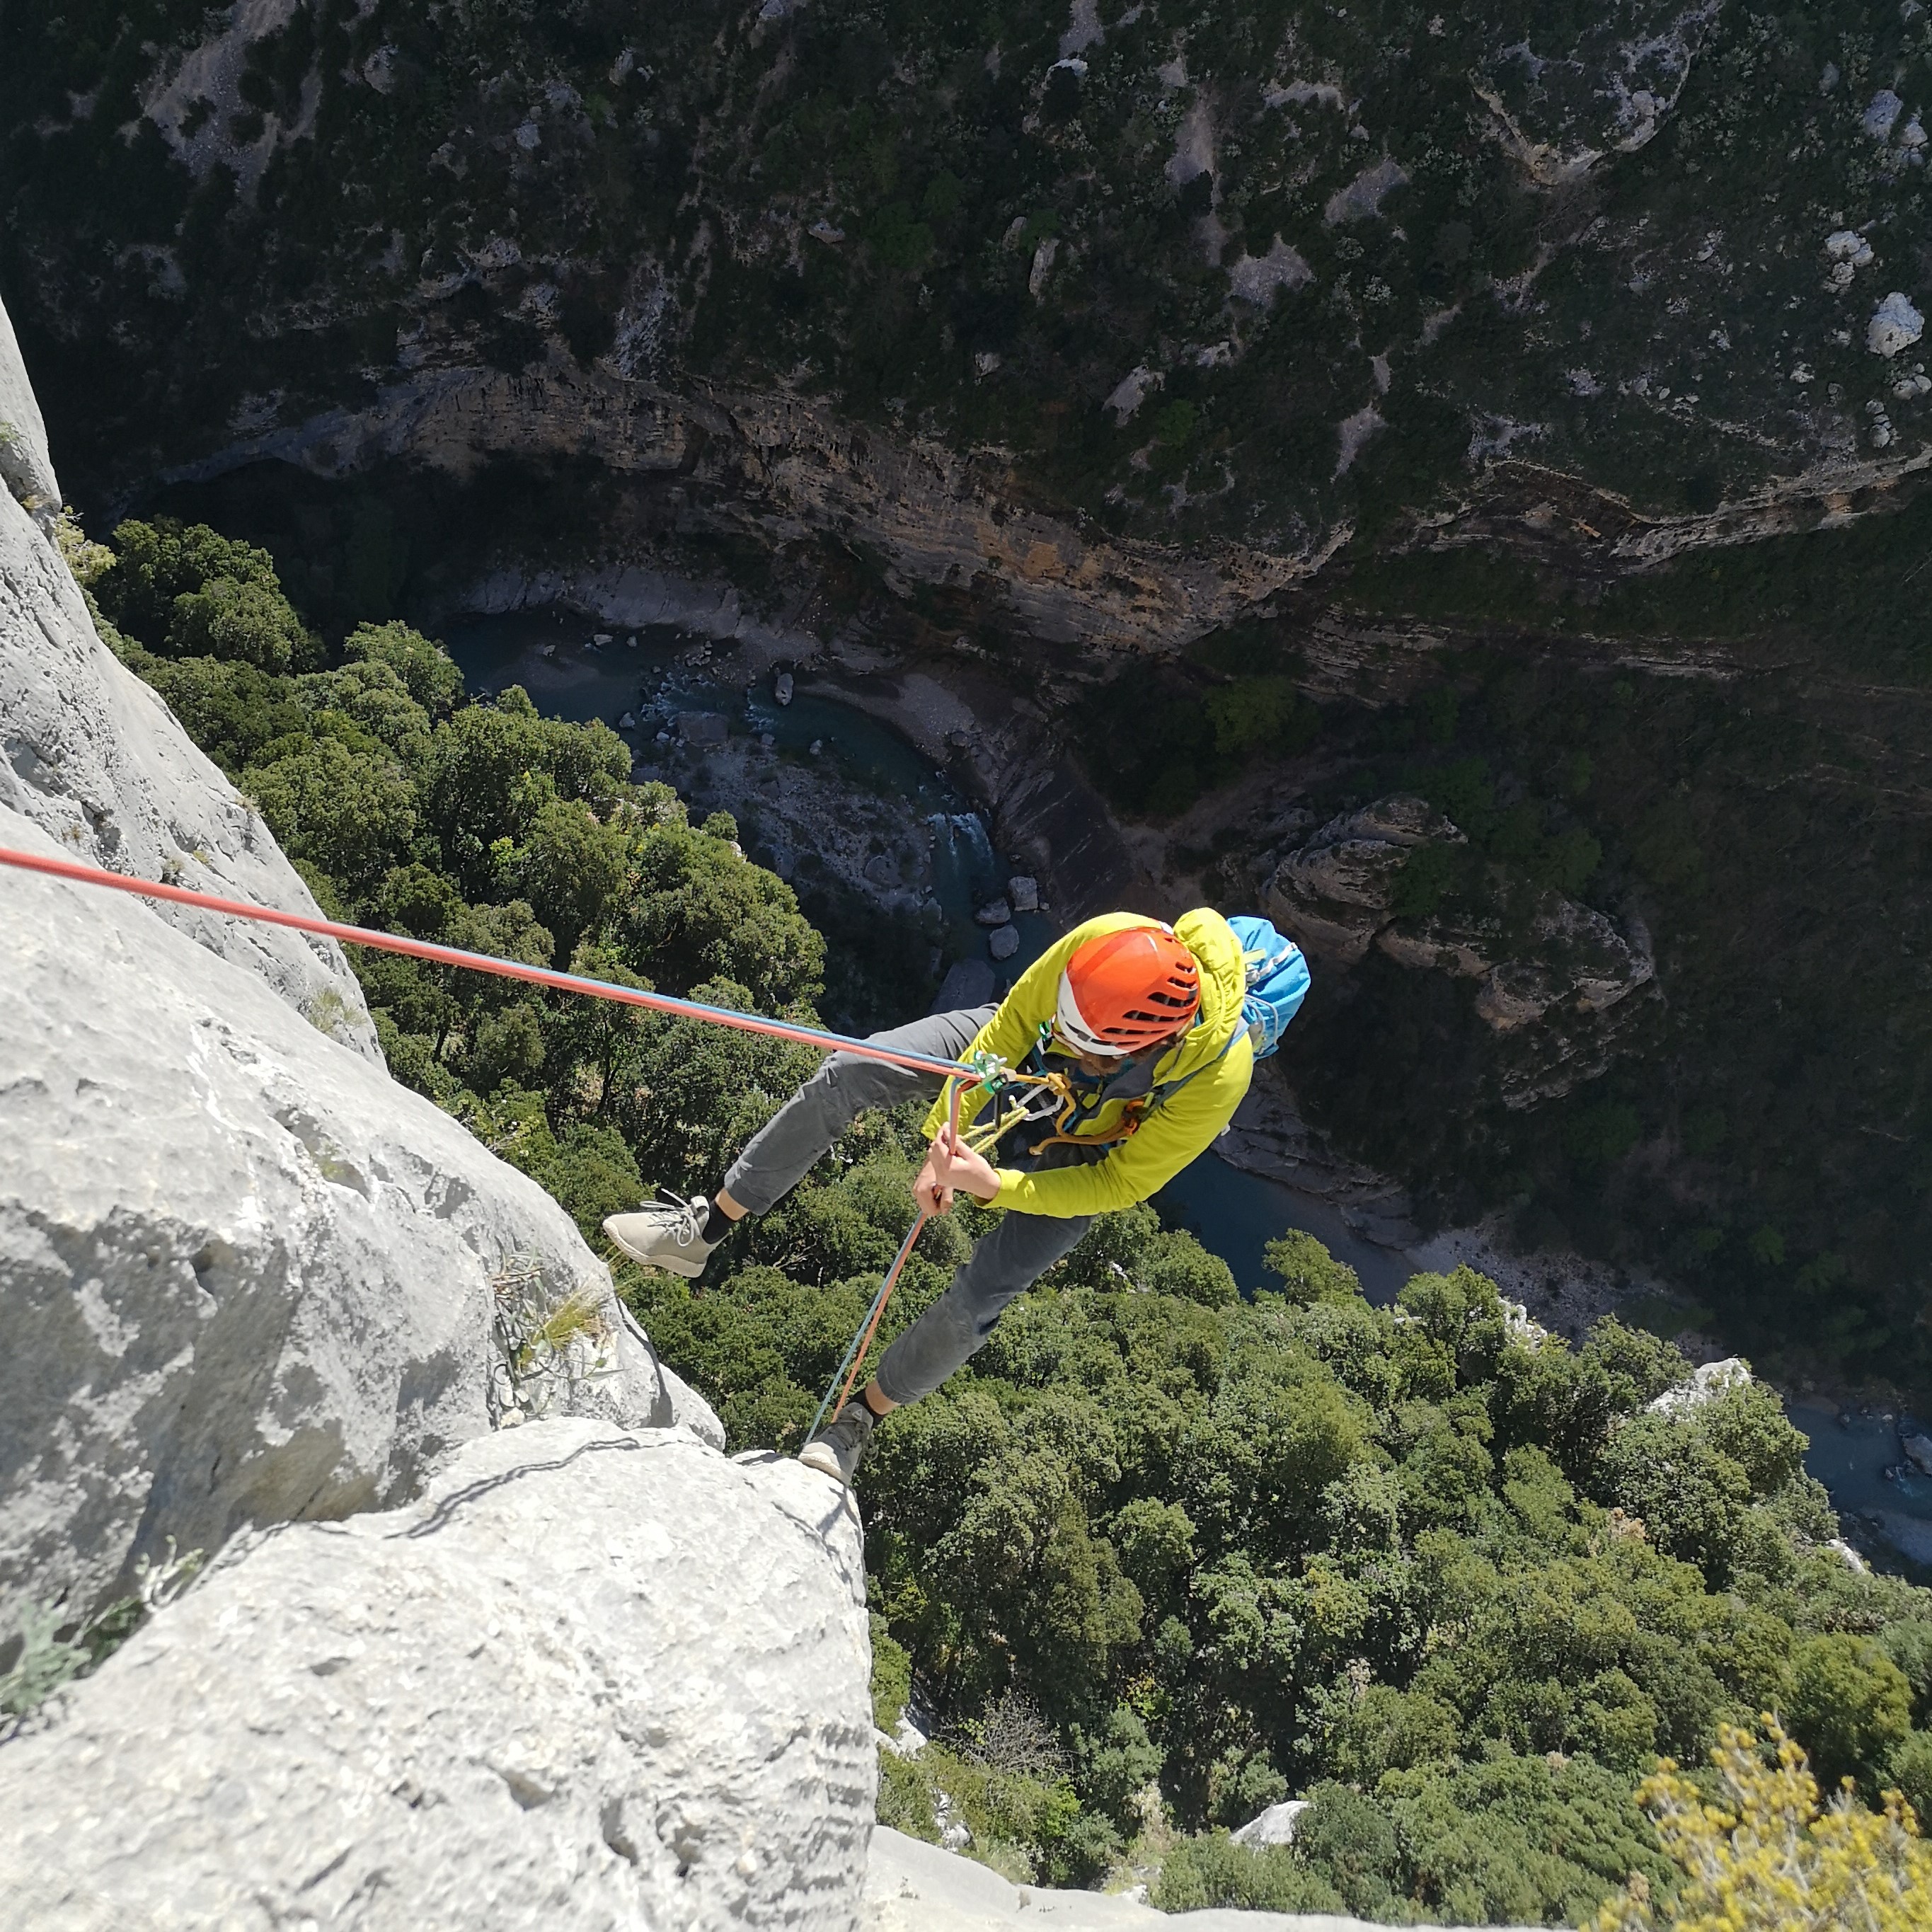 Un grimpeur apprend à descendre en rappel pendant un stage escalade dans les gorges du Verdon